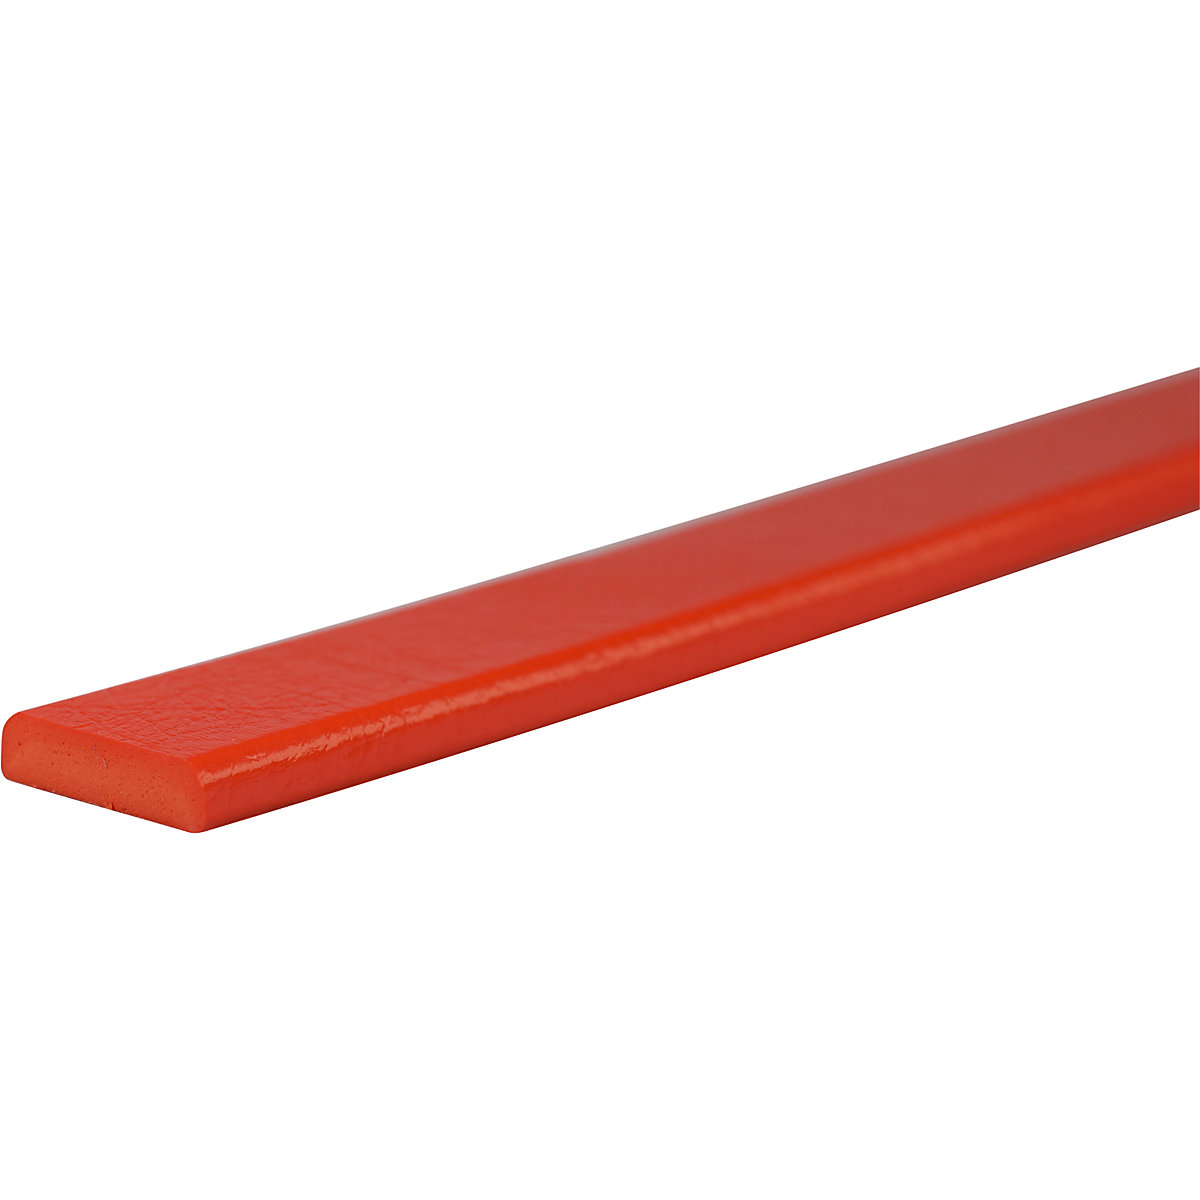 Knuffi®-oppervlaktebescherming – SHG, type F, stuk van 1 m, rood-23